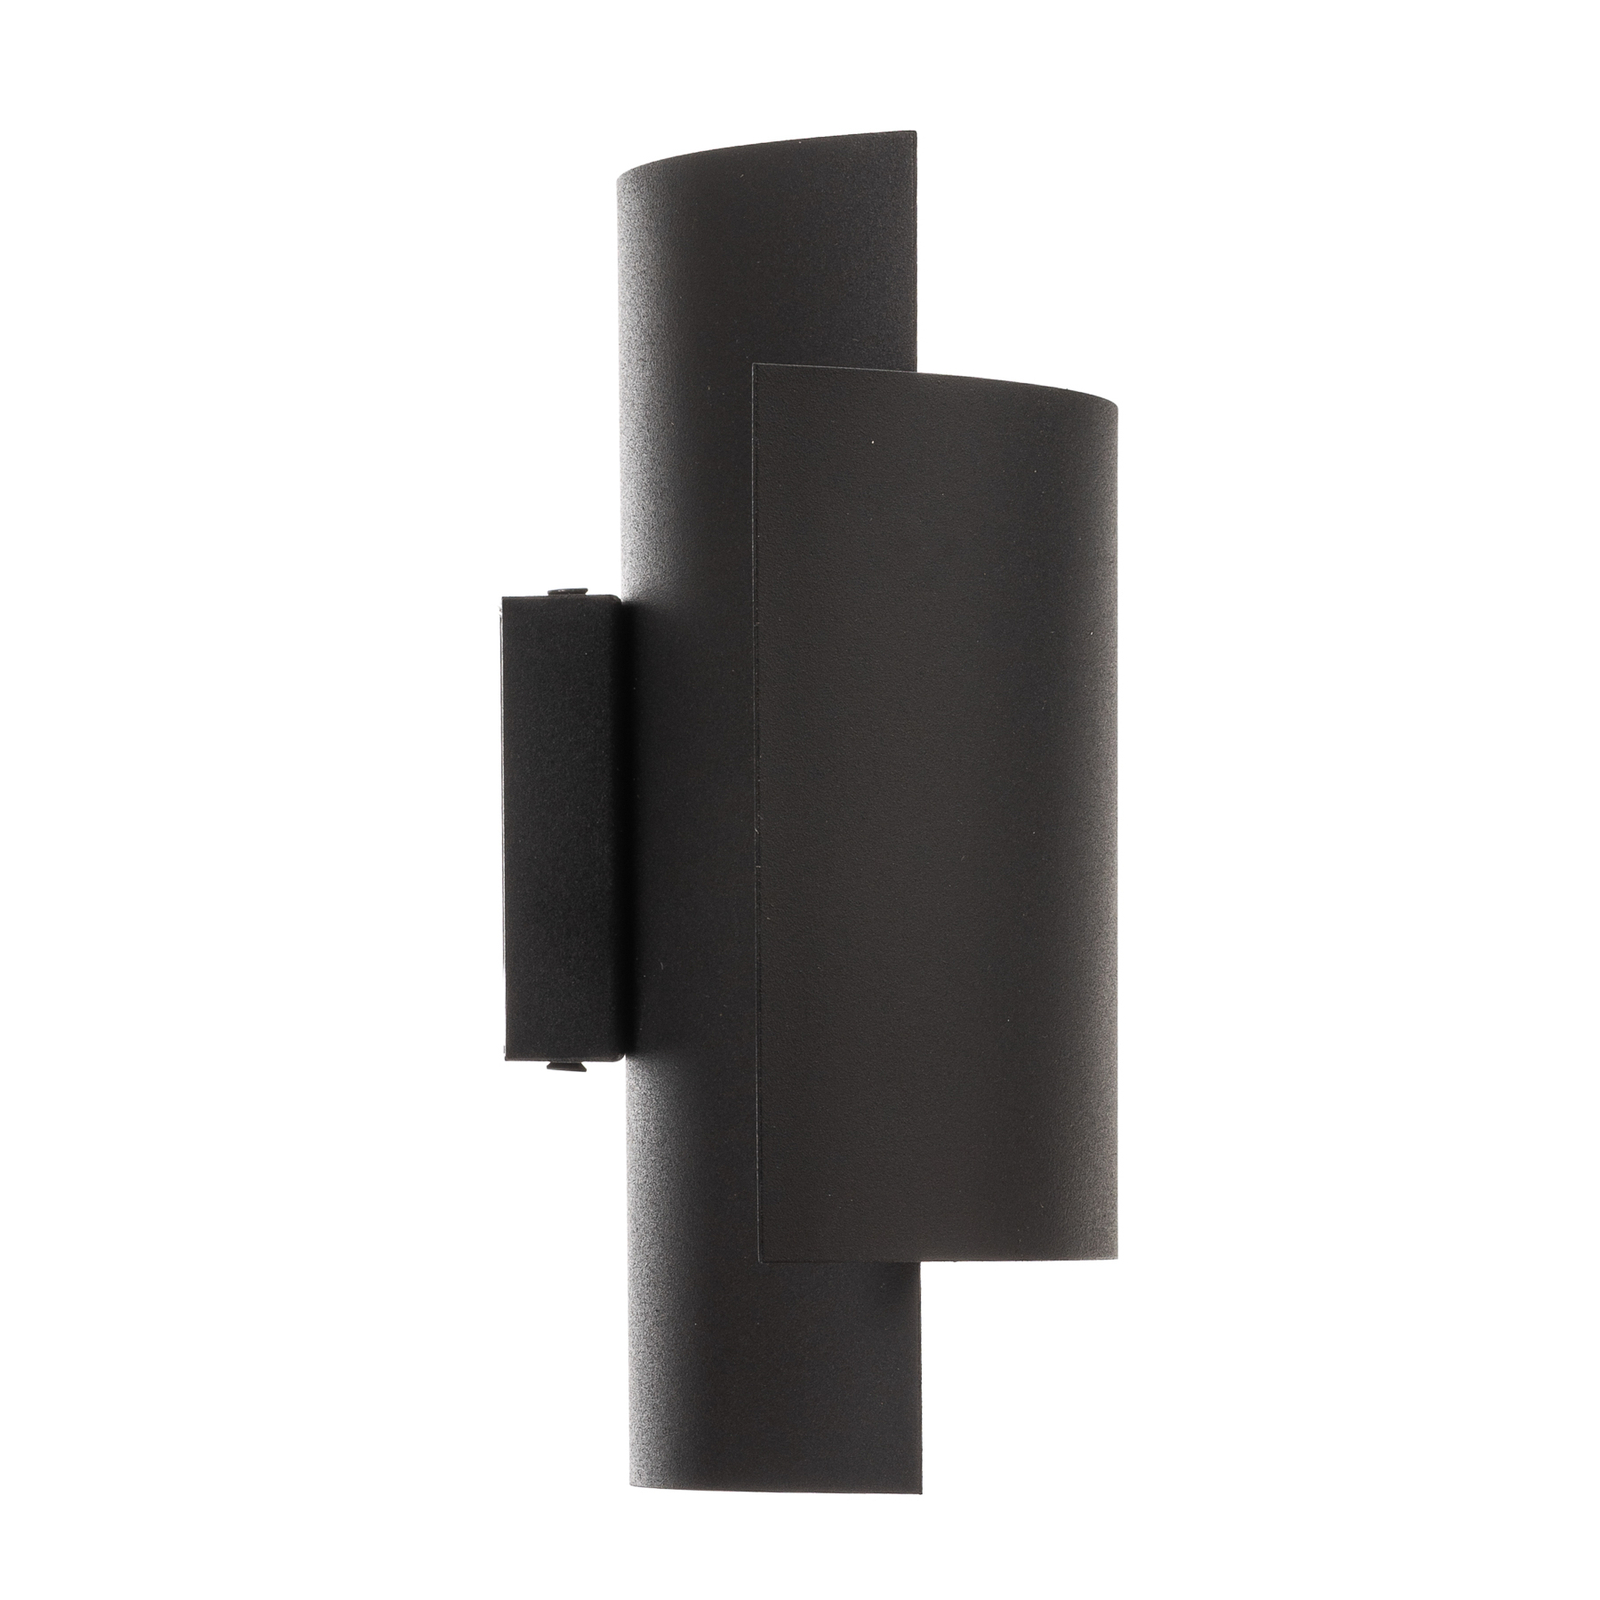 Pako sieninis šviestuvas, pagamintas iš dviejų juodos spalvos plieno